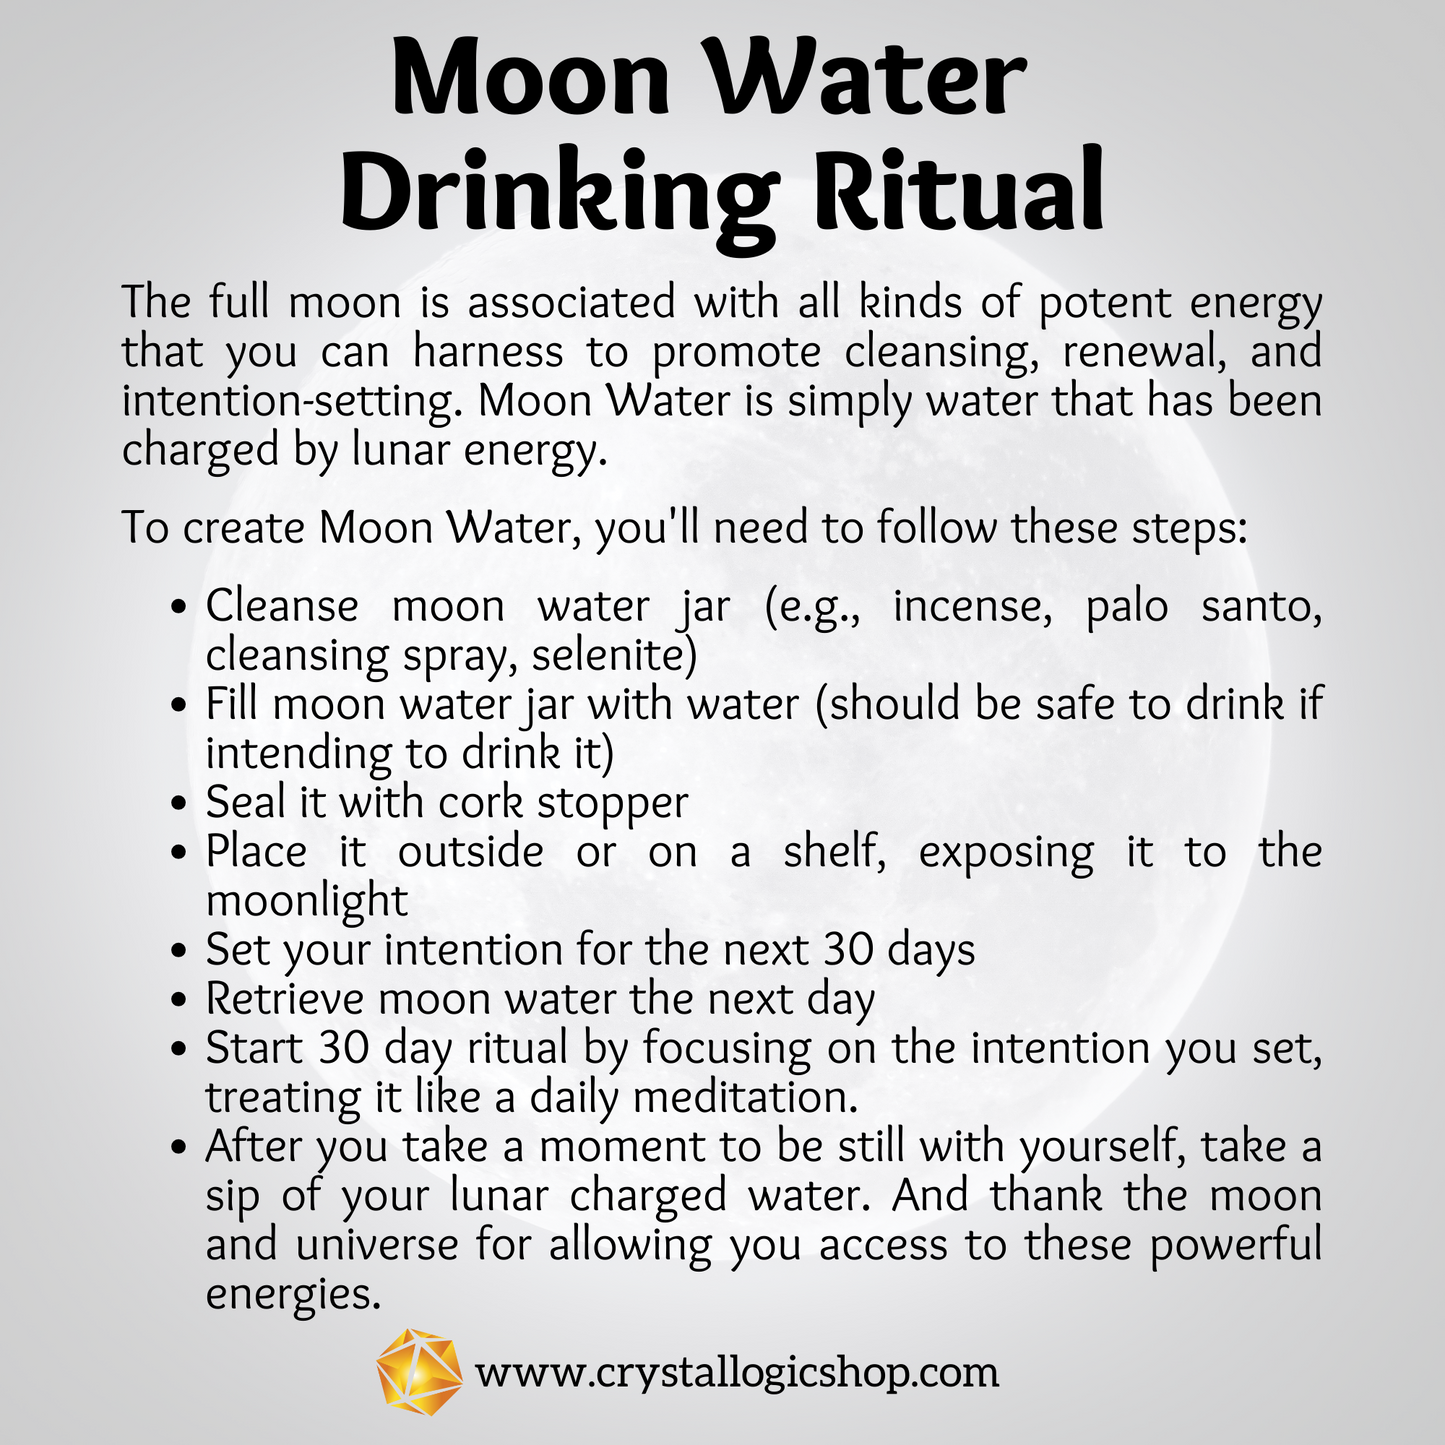 New Moon Water Jar